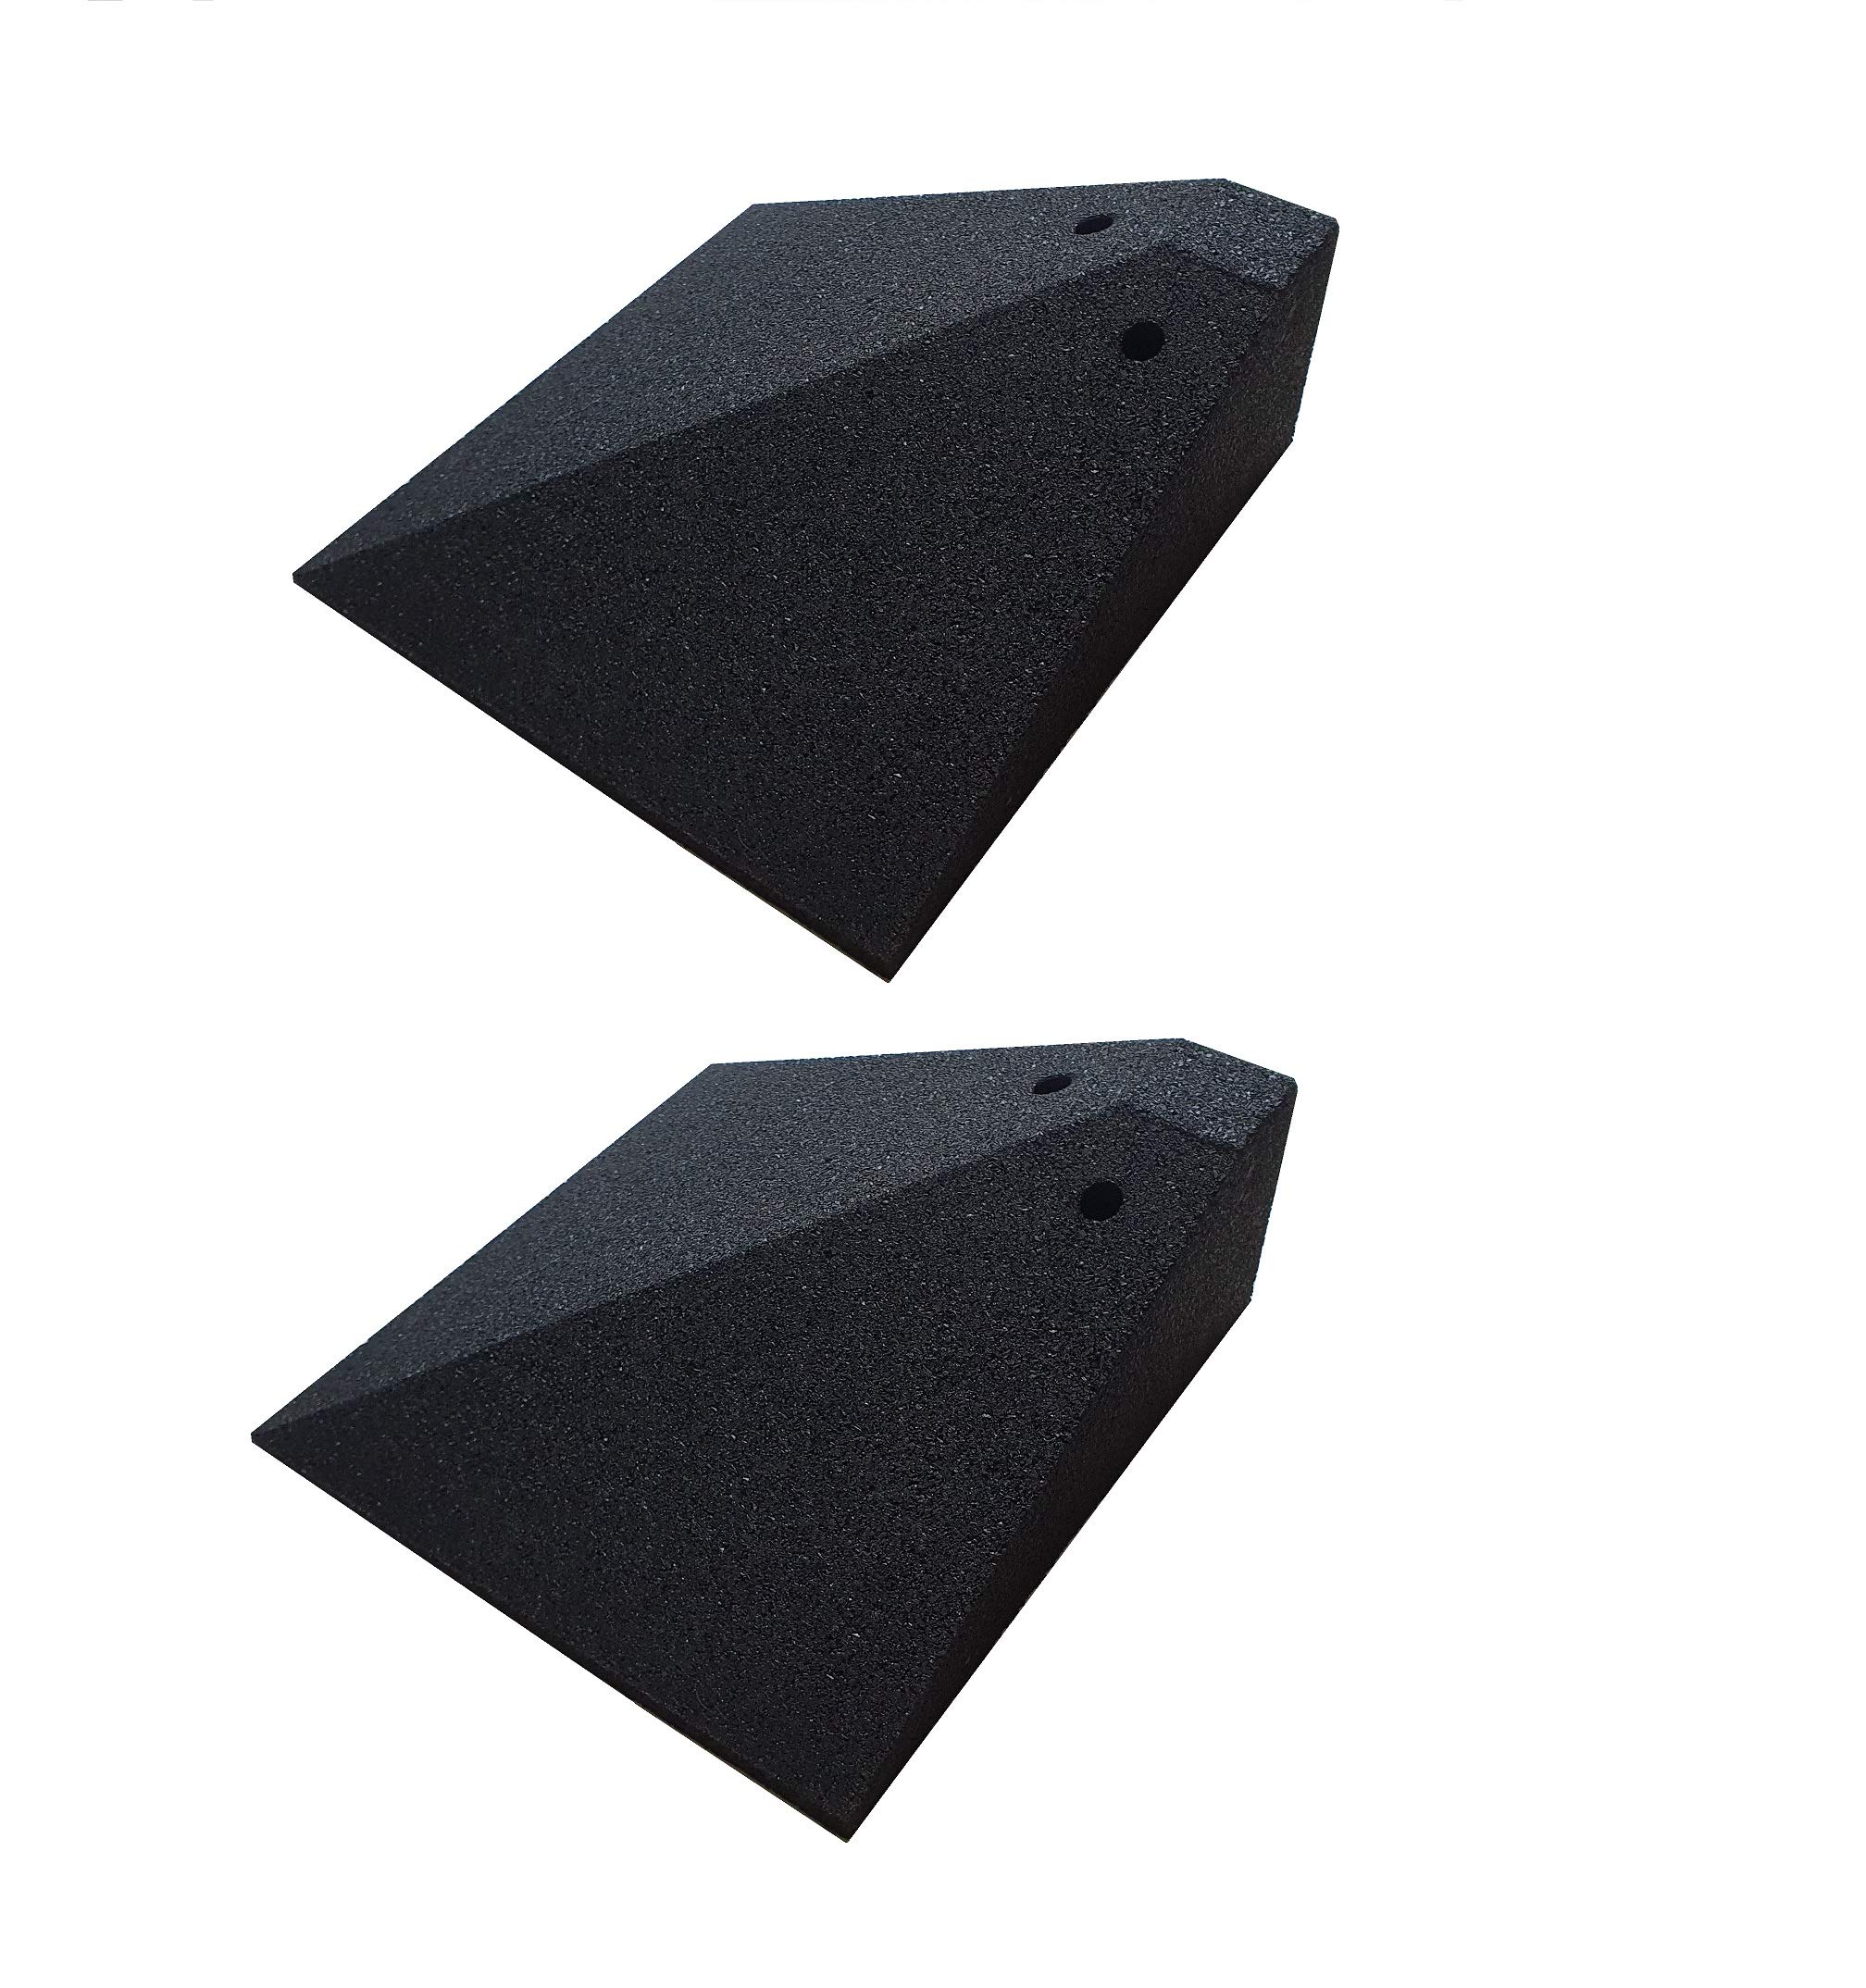 Bepco Bordsteinkanten-Rampe Eckelement-Set (2 Stück) – Schrägen zum seitlichen überfahren + 4 Befestigungen, mit eingelagerten Unterlegscheiben zur Befestigung (25 x 25 x 8 cm)